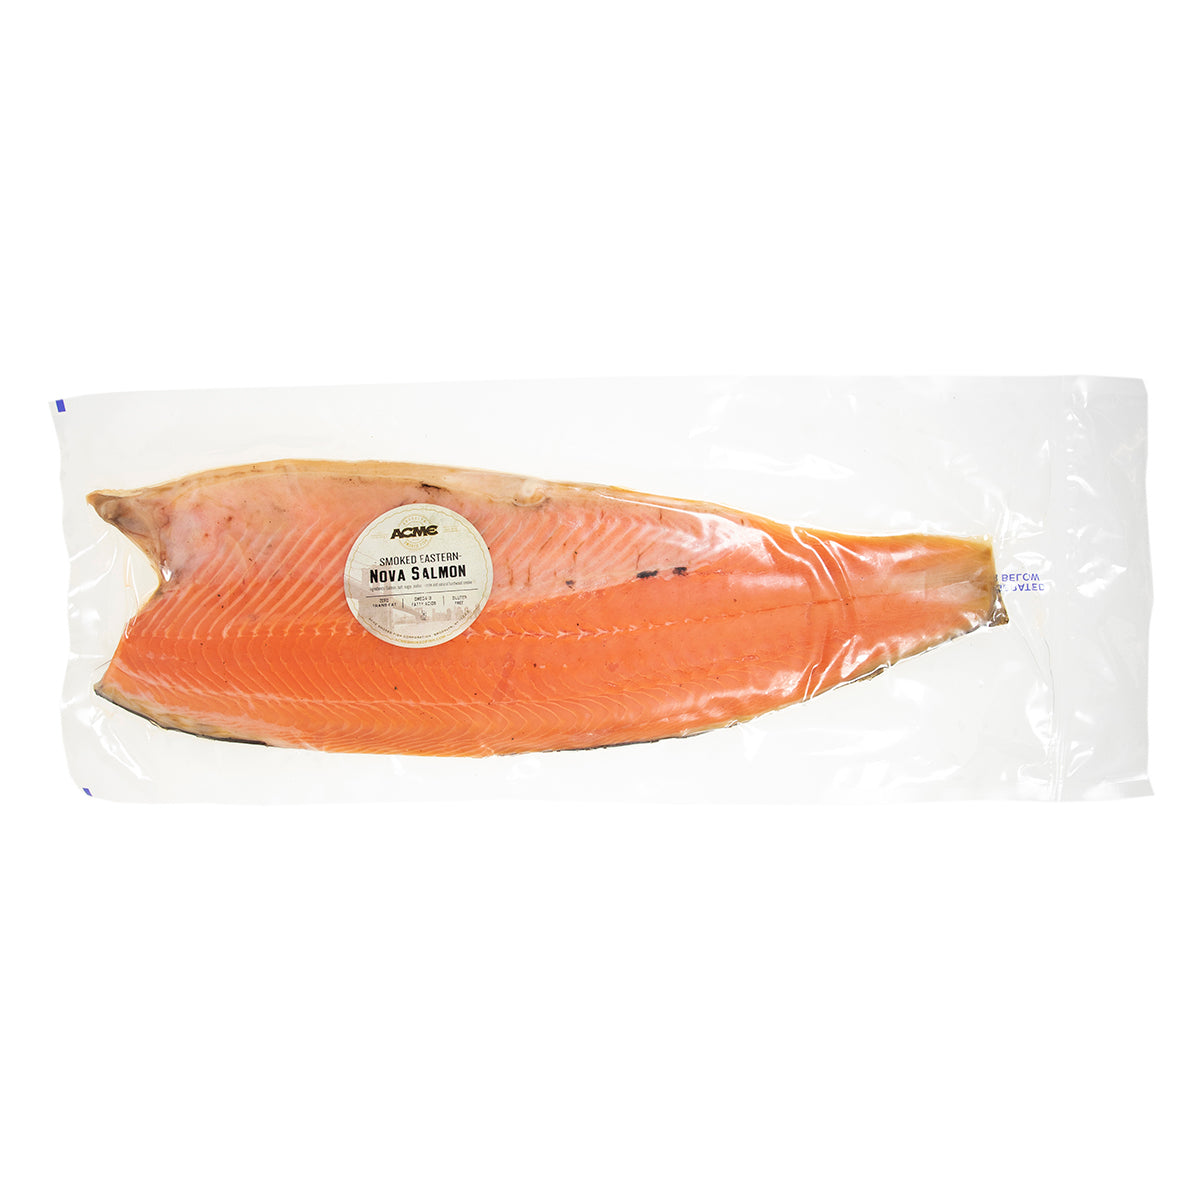 Acme Smoked Fish Whole Nova Smoked Salmon 6 lb Bag